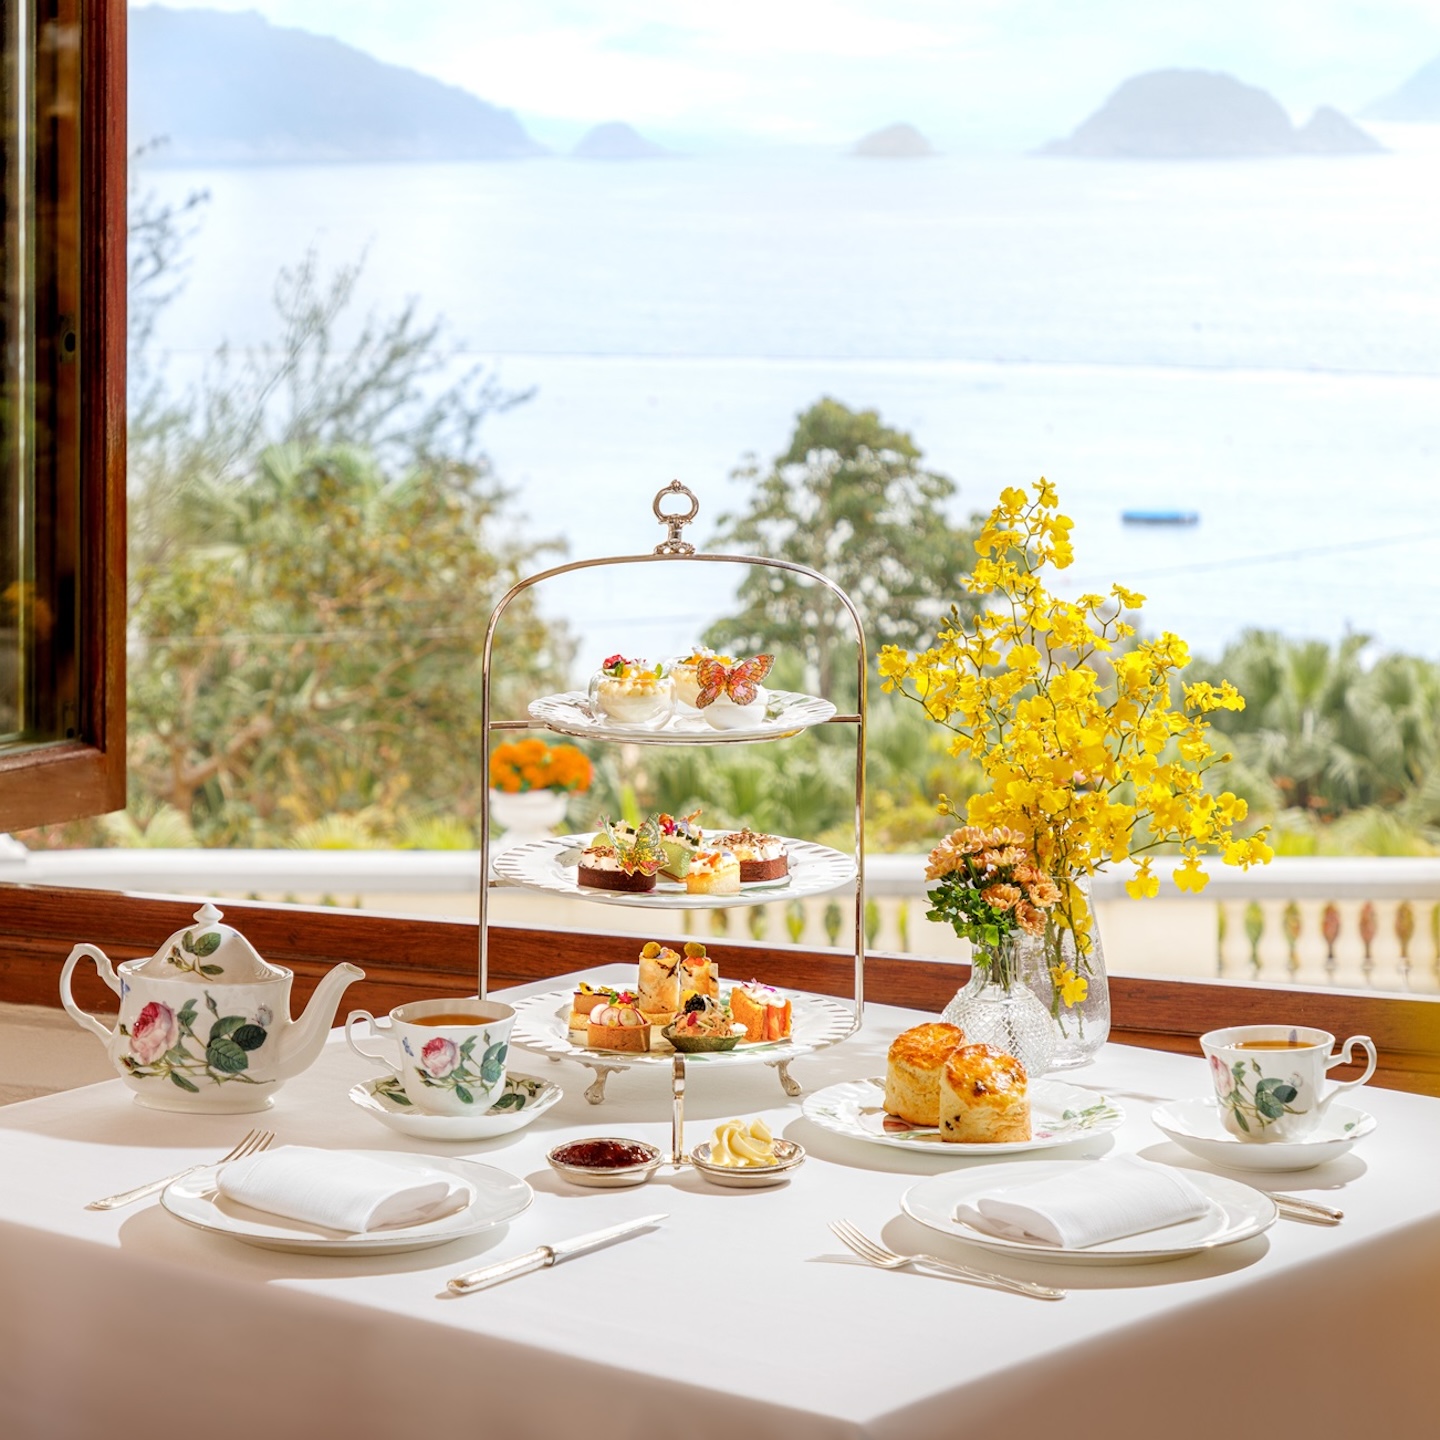 Best Afternoon Tea Hong Kong, High Tea Sets: The Verandah Floral Bliss Afternoon Tea